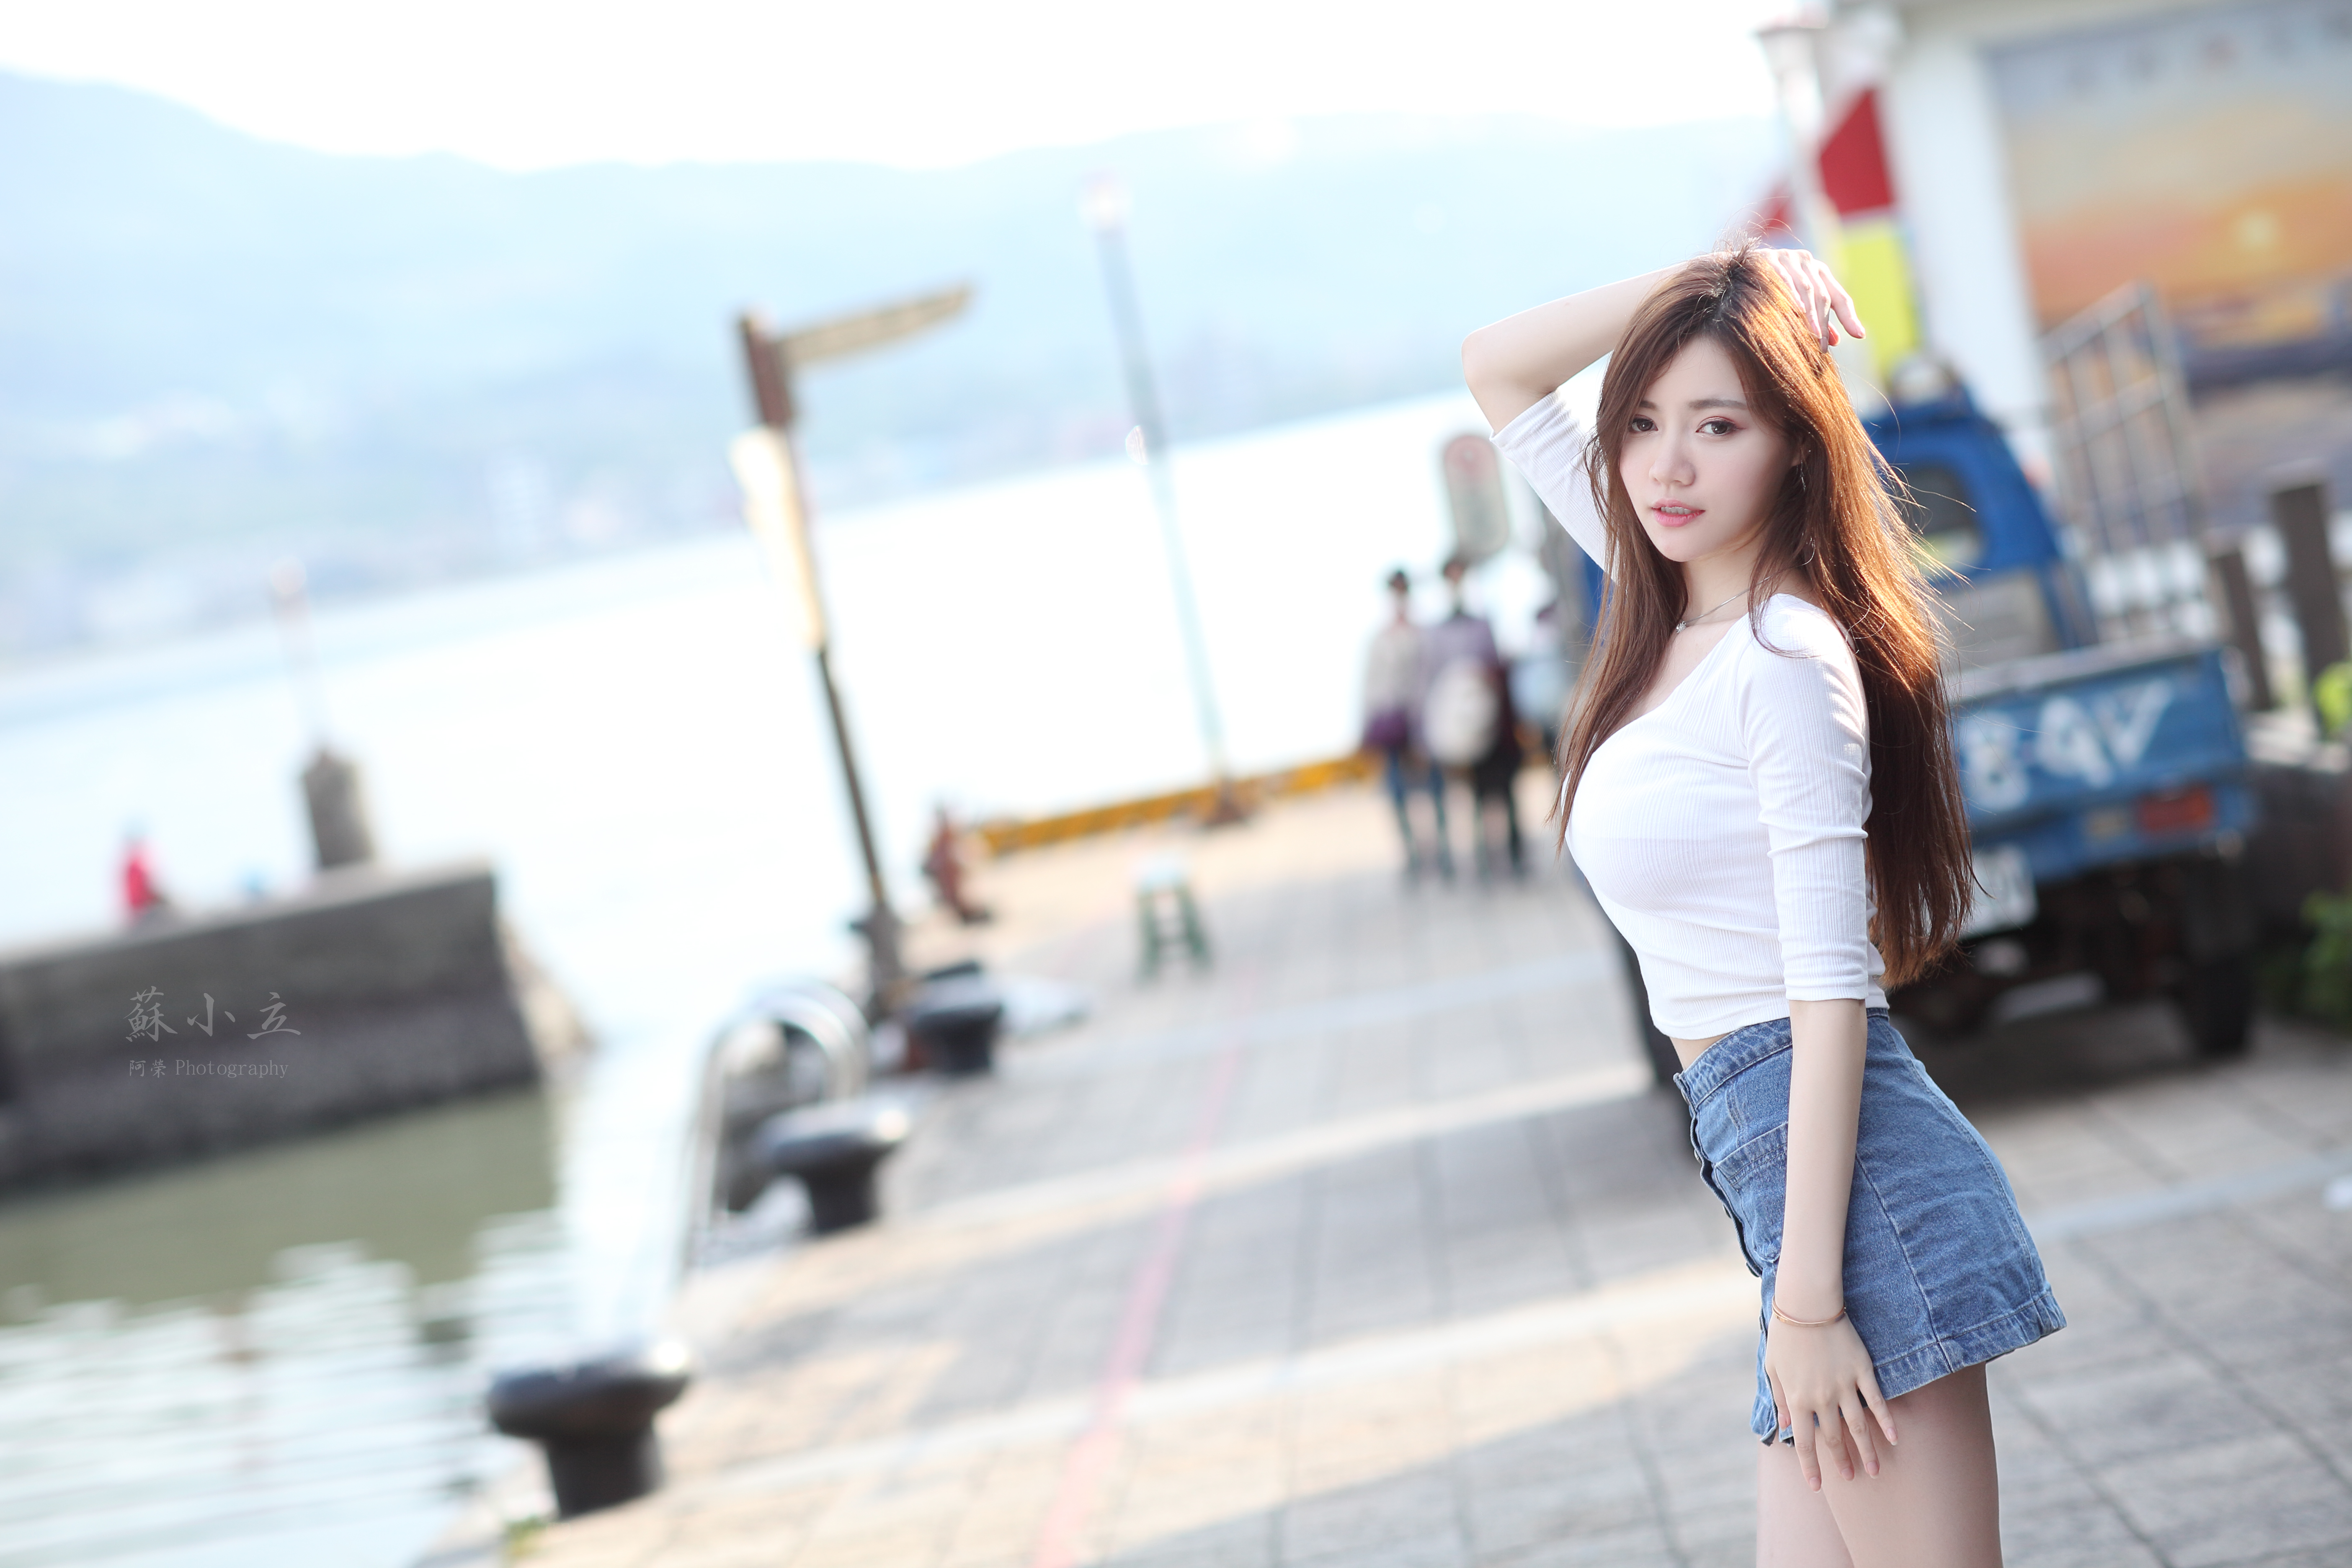 Asian Model Women Long Hair Brunette Jeans Skirt Shirt Pier Trucks 5616x3744